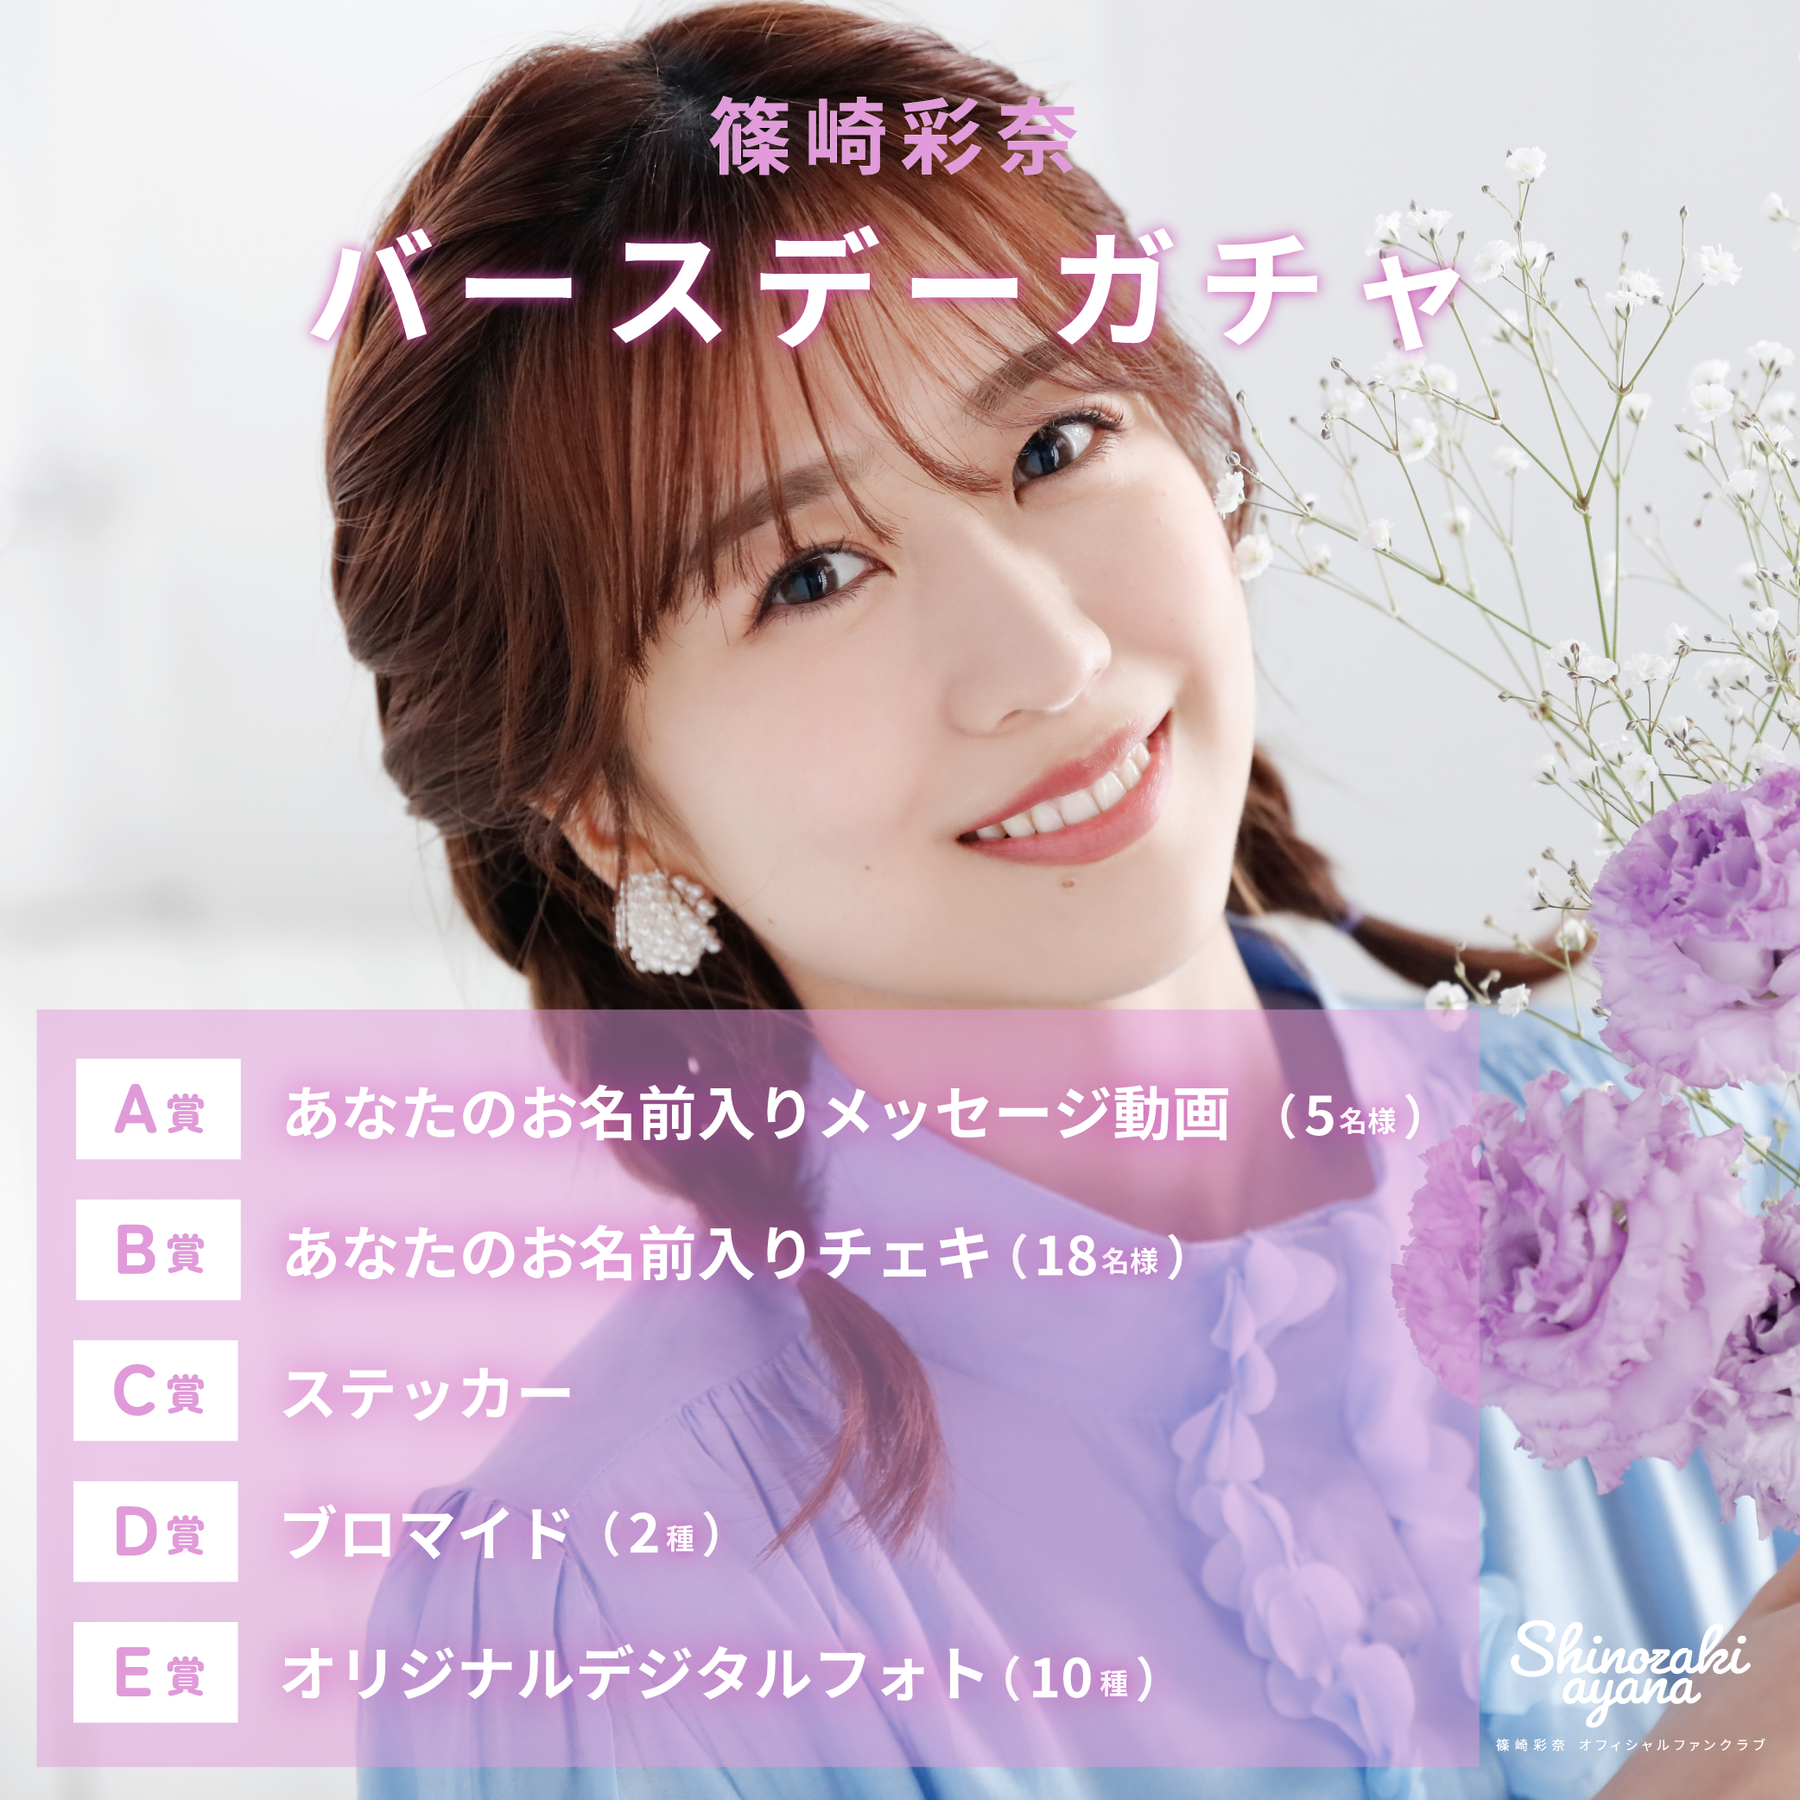 AKB48 Ayana Shinozaki Birthday Gacha